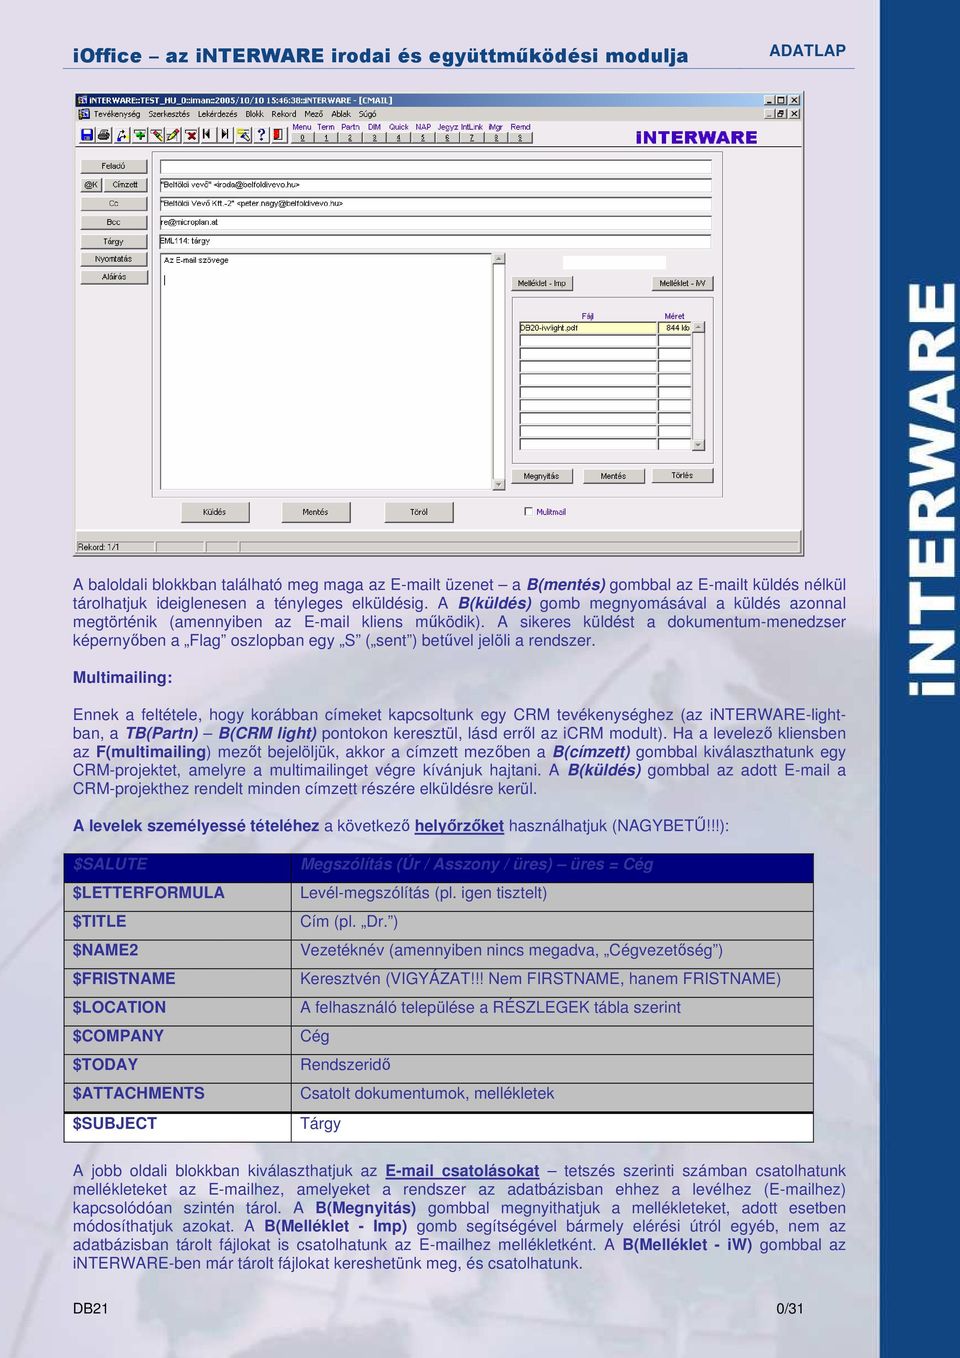 A sikeres küldést a dokumentum-menedzser képernyıben a Flag oszlopban egy S ( sent ) betővel jelöli a rendszer.